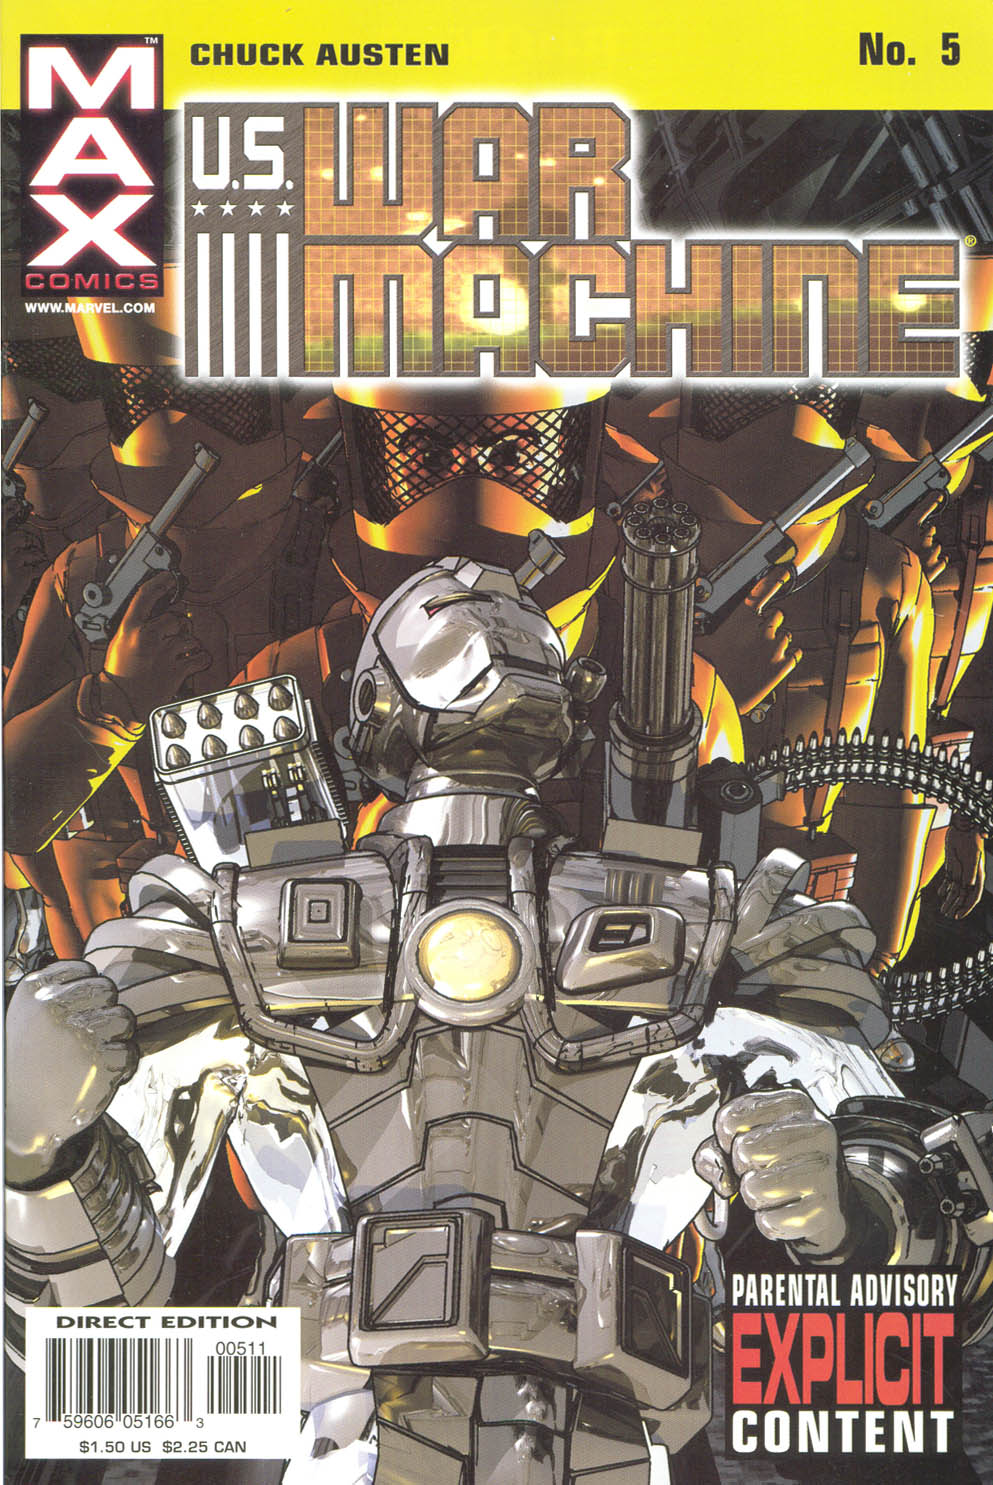 Read online U.S. War Machine comic -  Issue #5 - 2